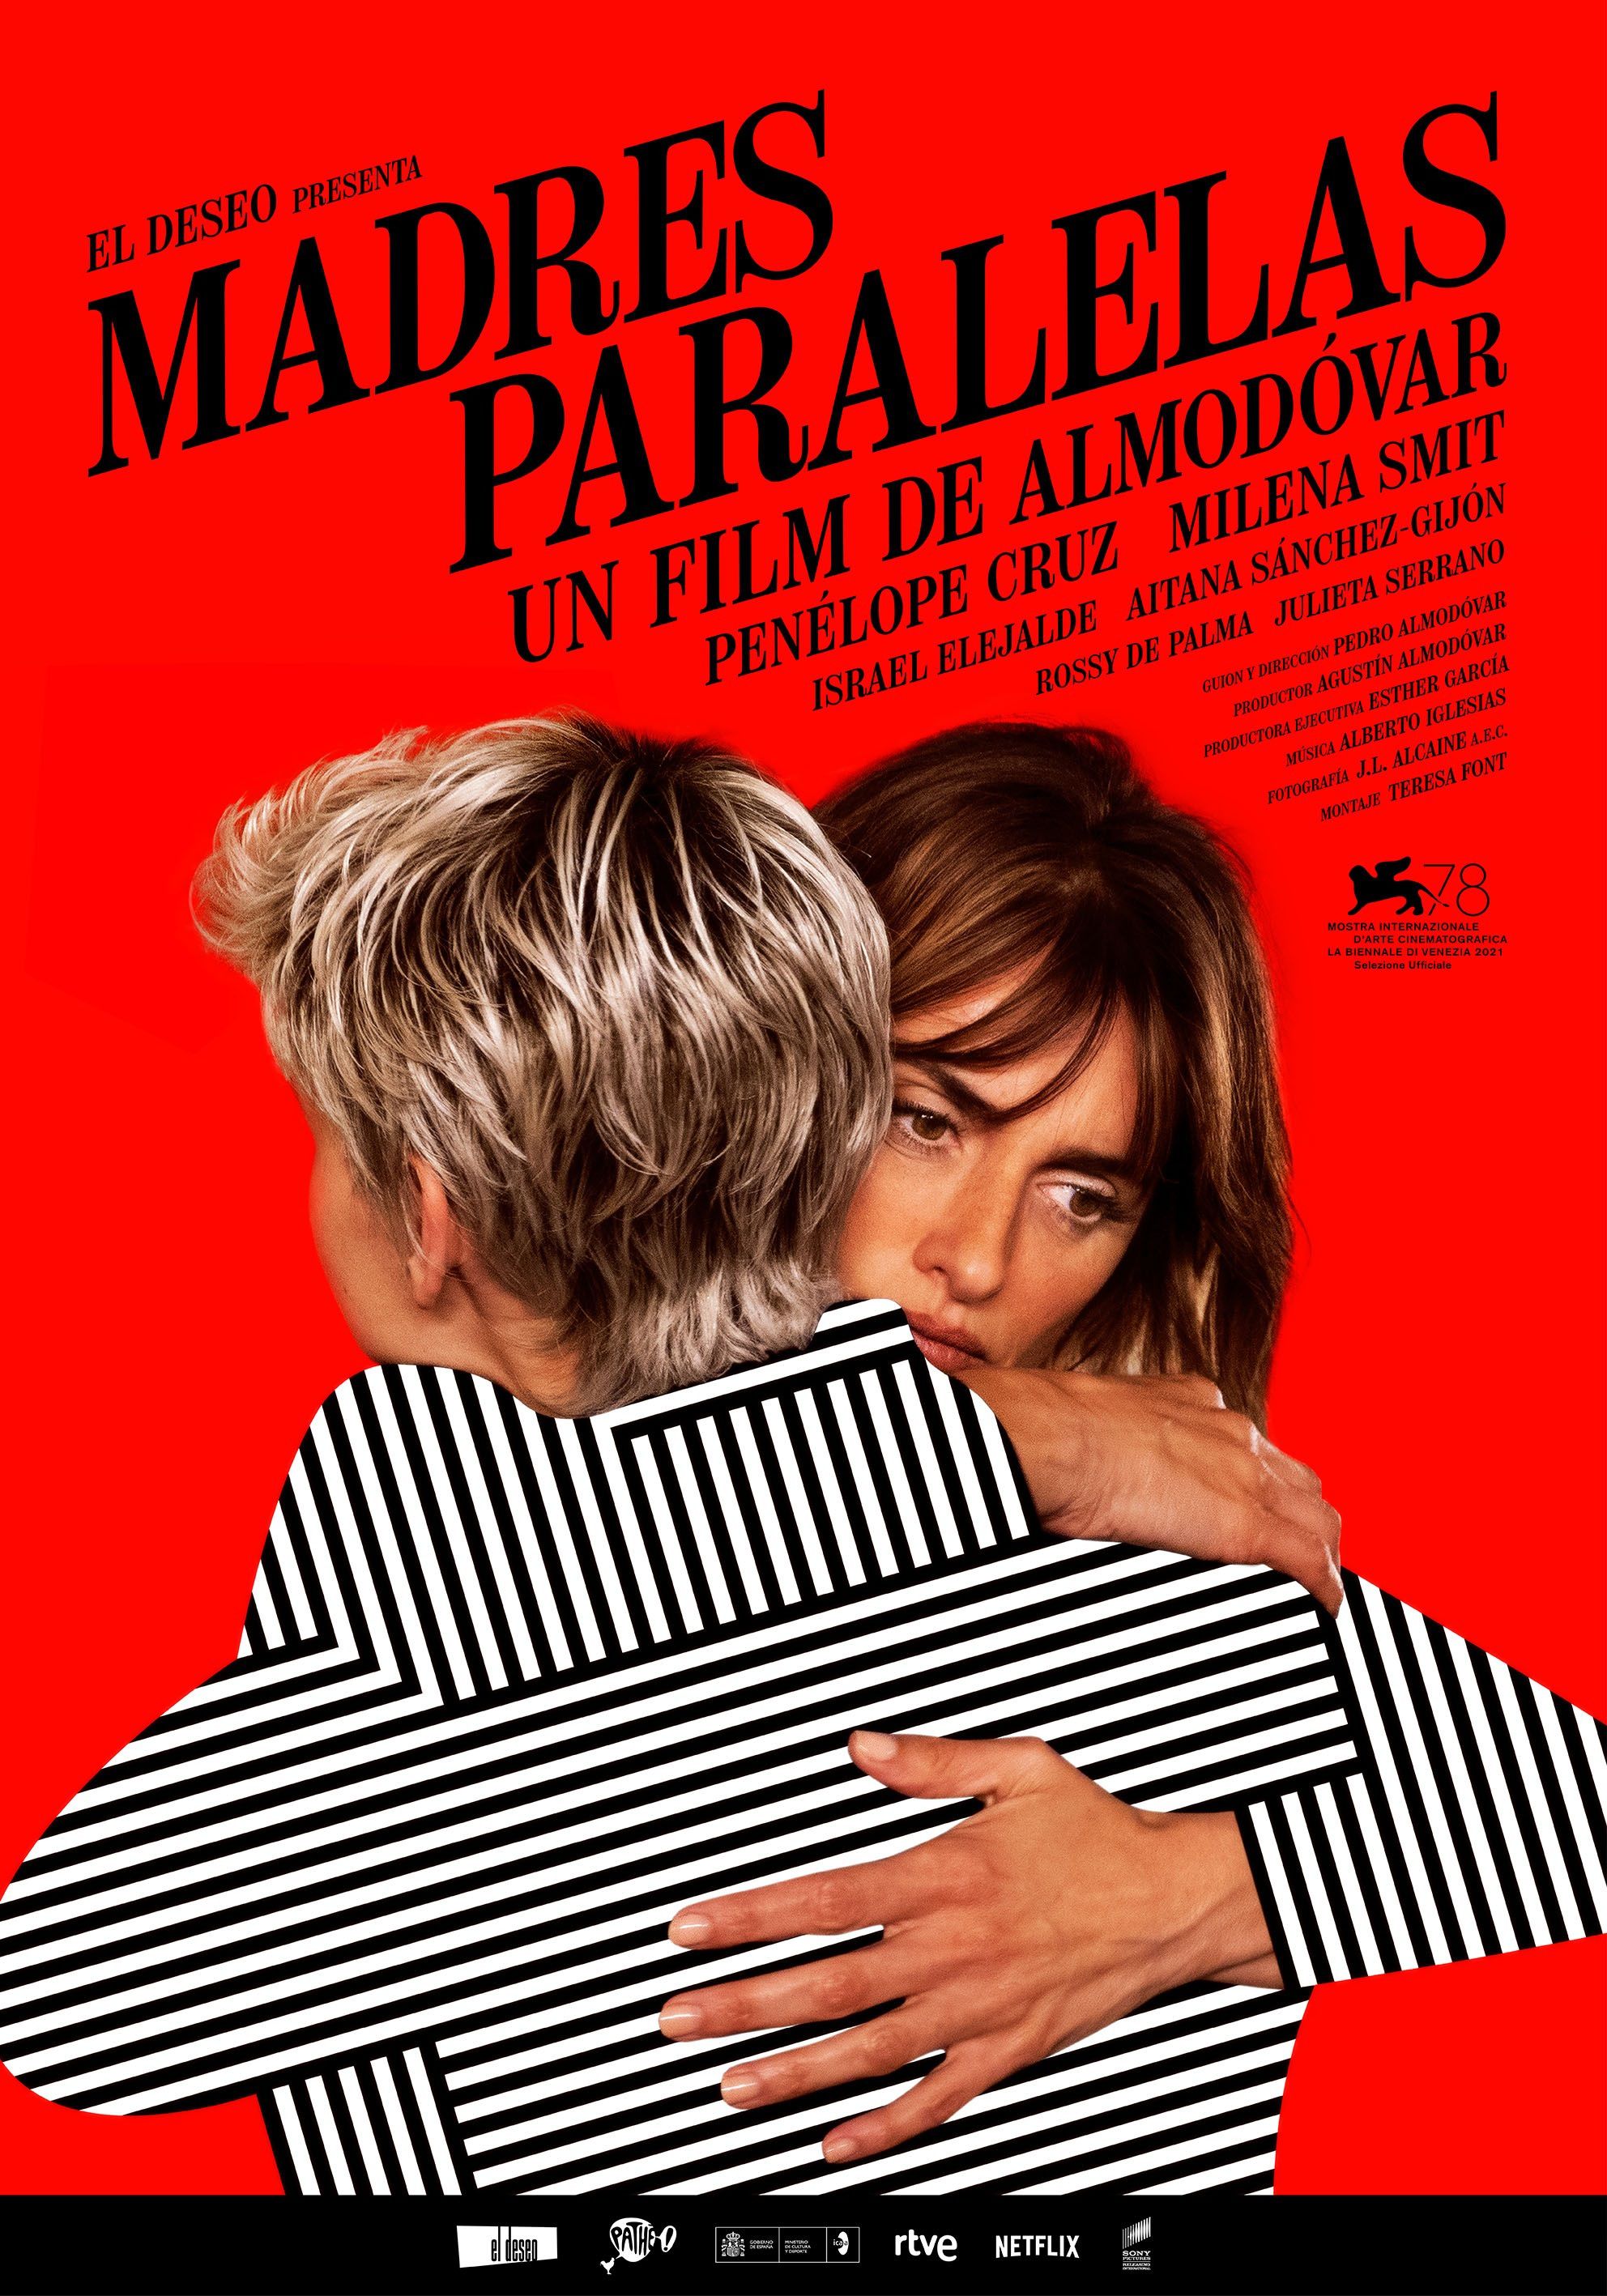 Cartel de la nueva película de Pedro Almodóvar "Madres paralelas". Cedido por la productora El Deseo. SOLO USO EDITORIAL 